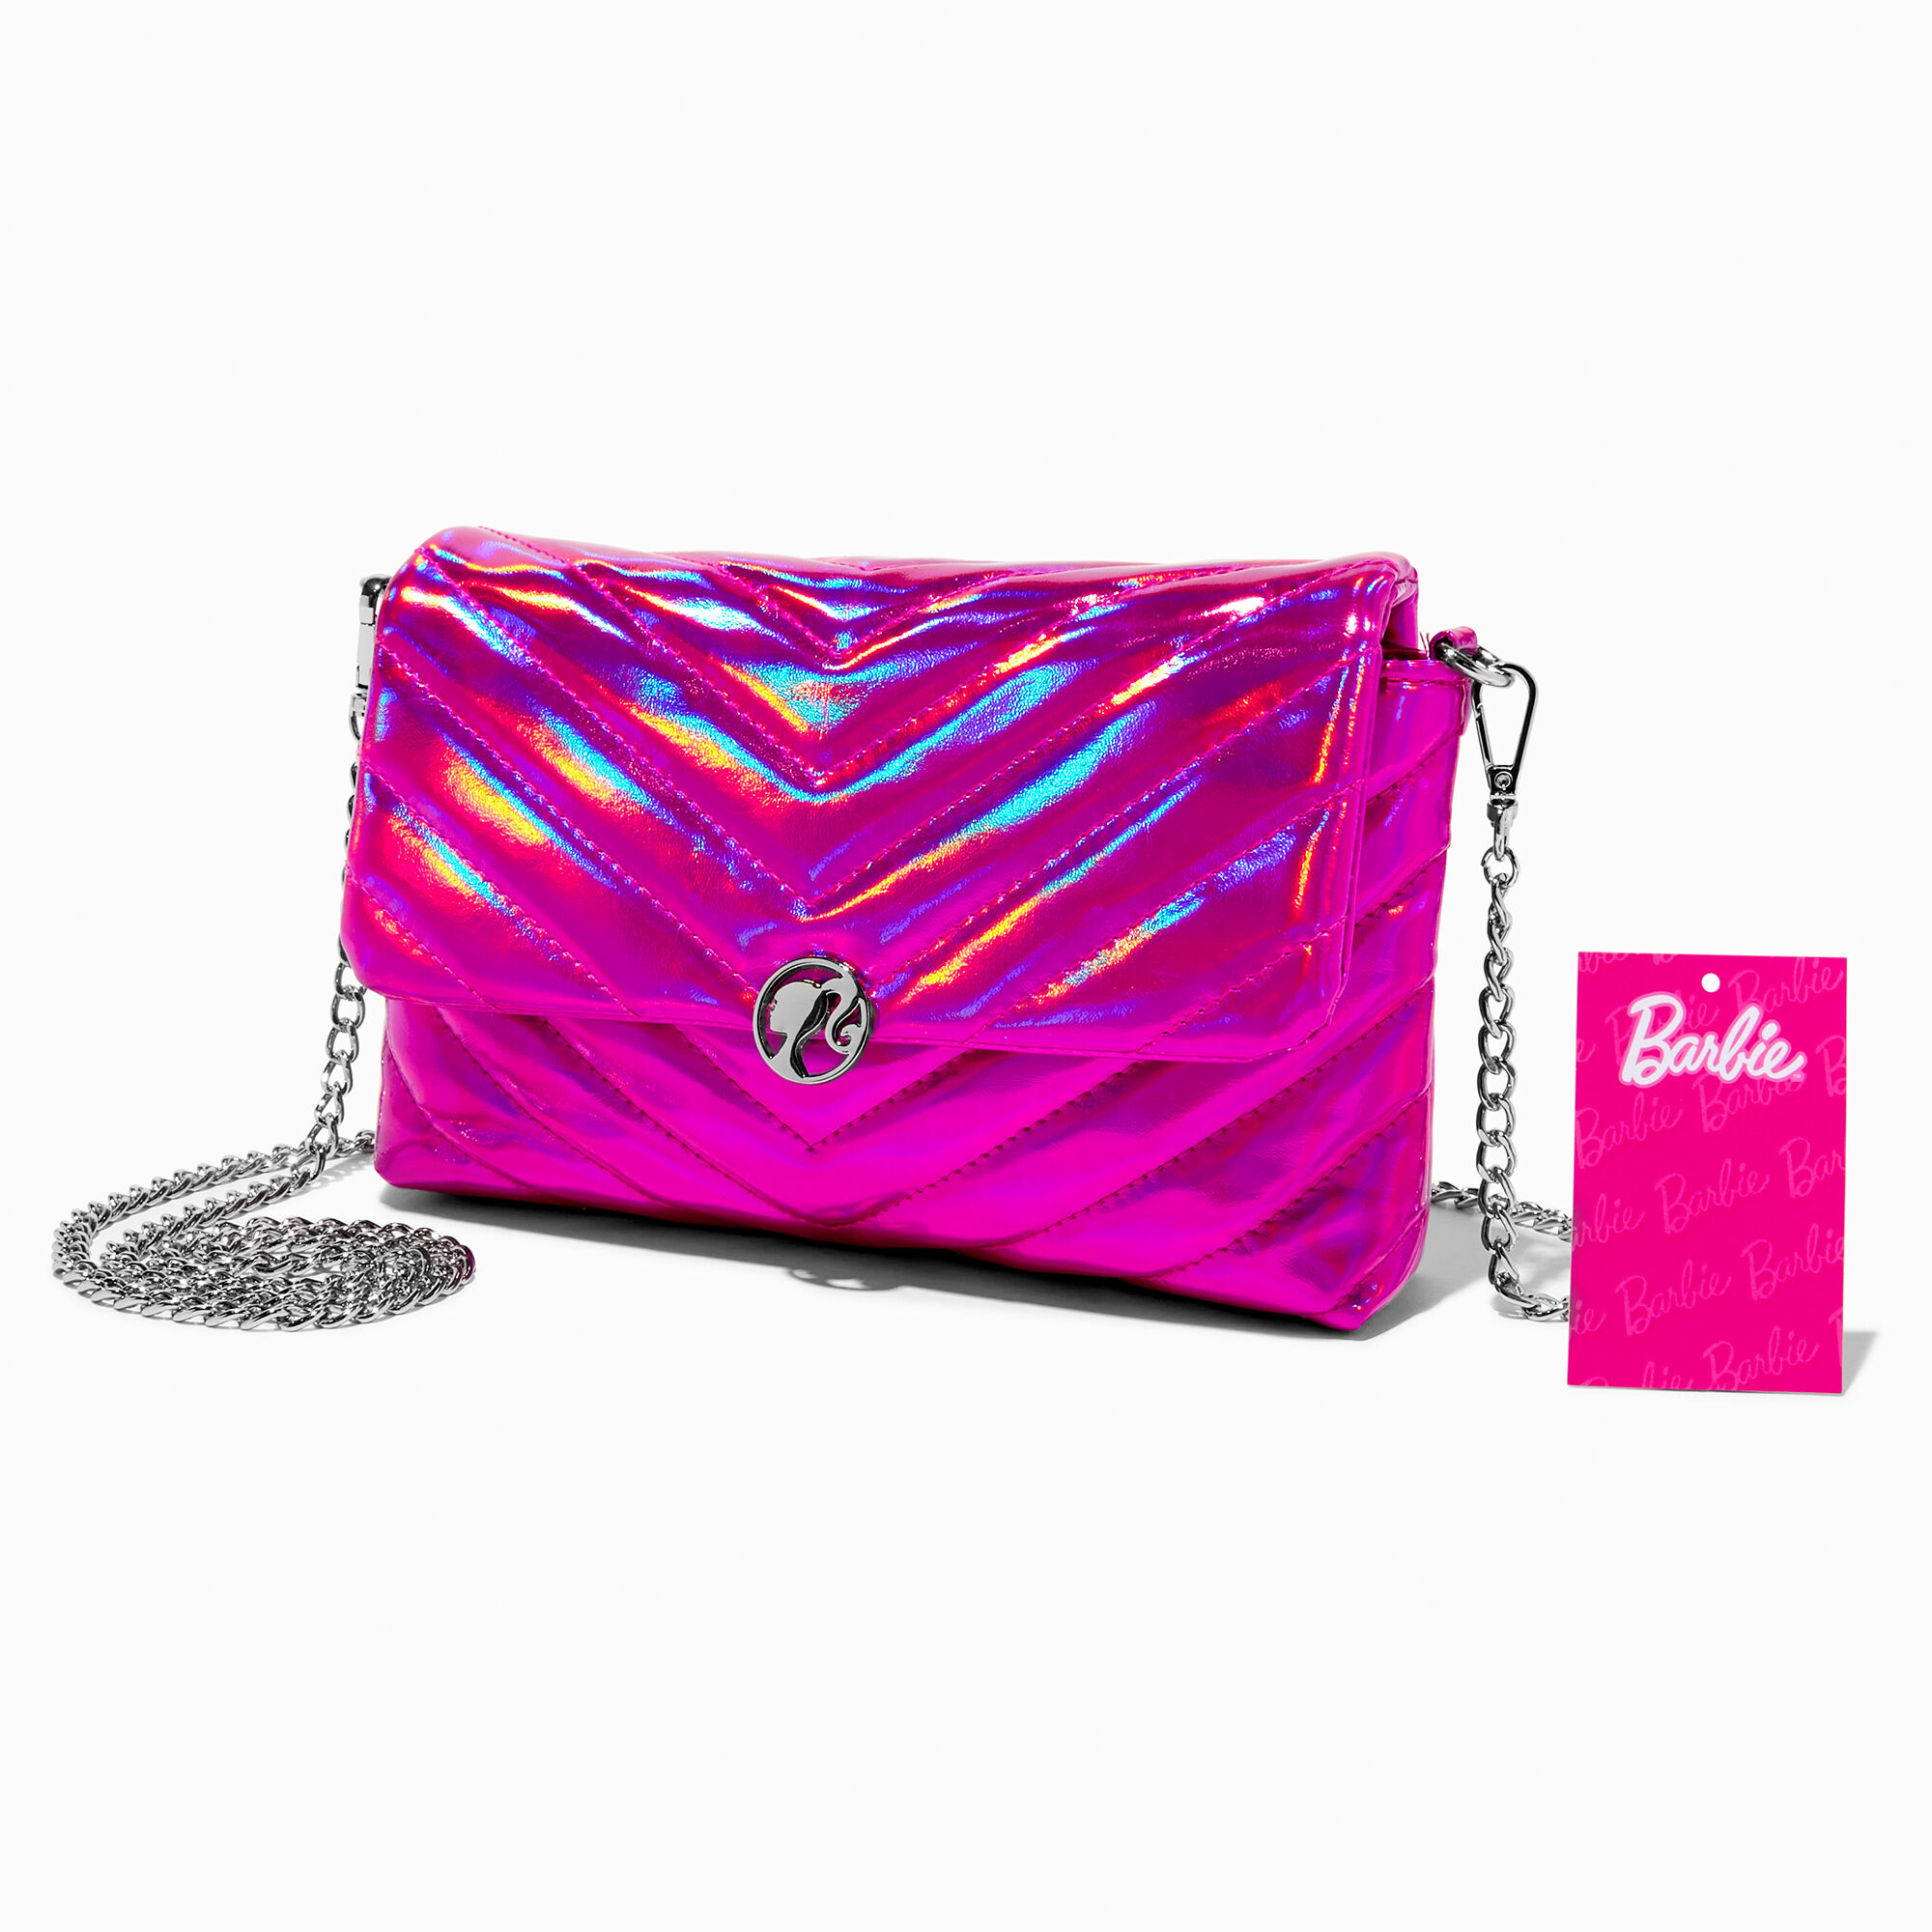 Buy Women Pink Casual Handbag Online - 732718 | Allen Solly